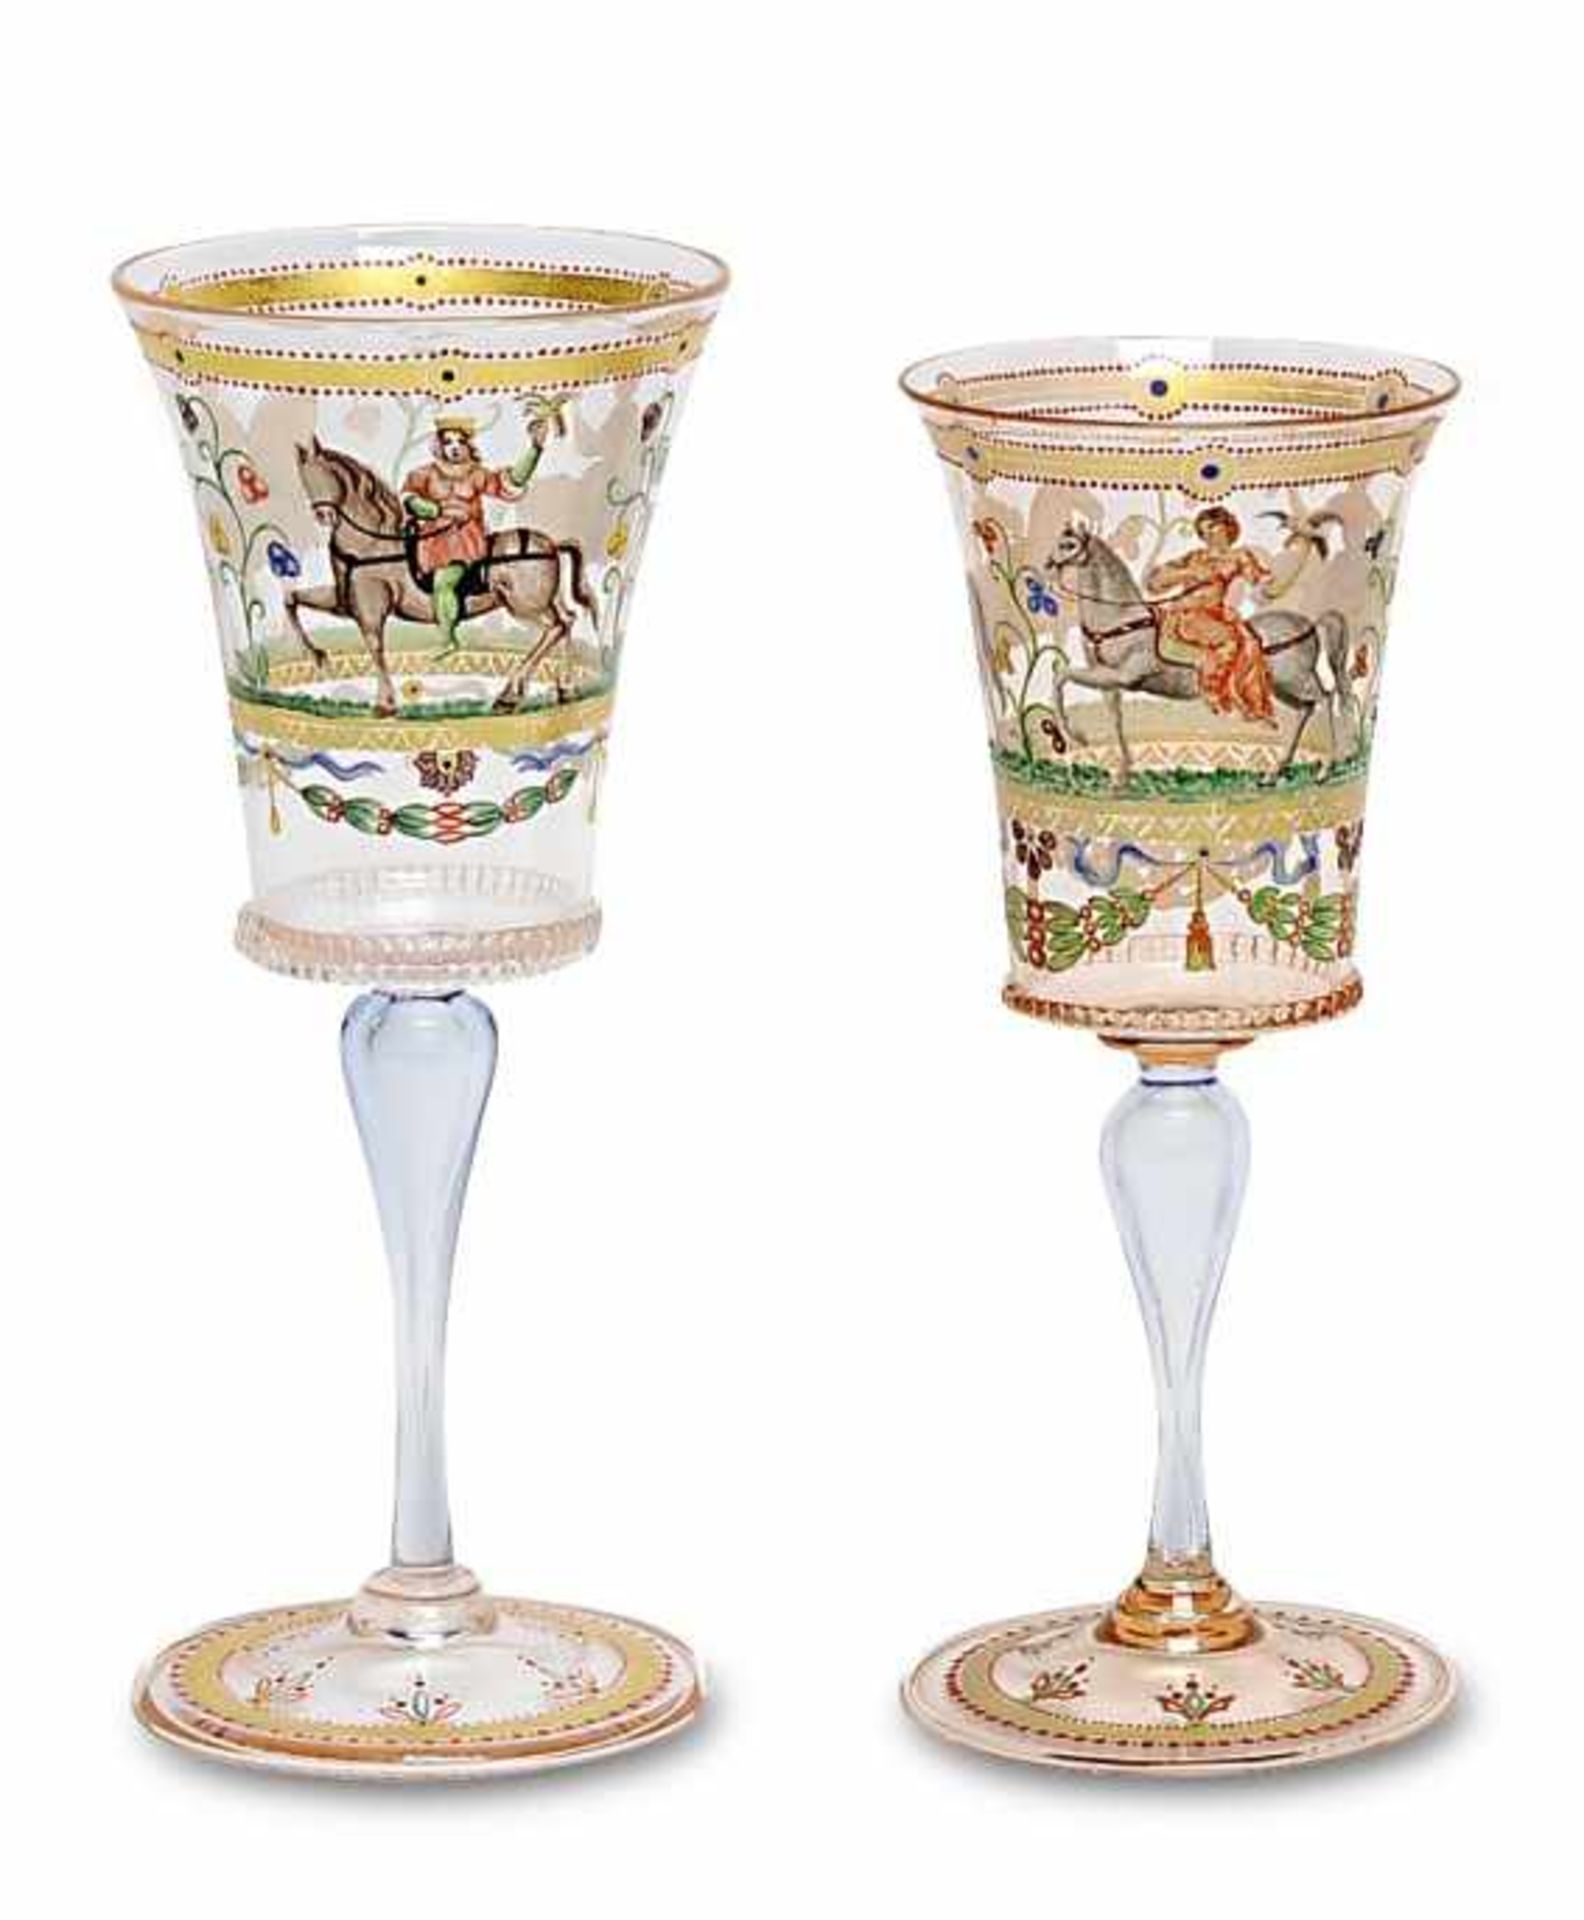 Zwei KelchgläserSalviati, Murano, Ende 19. Jh. (?) Leicht lachsfarbenes und leicht bläuliches Glas